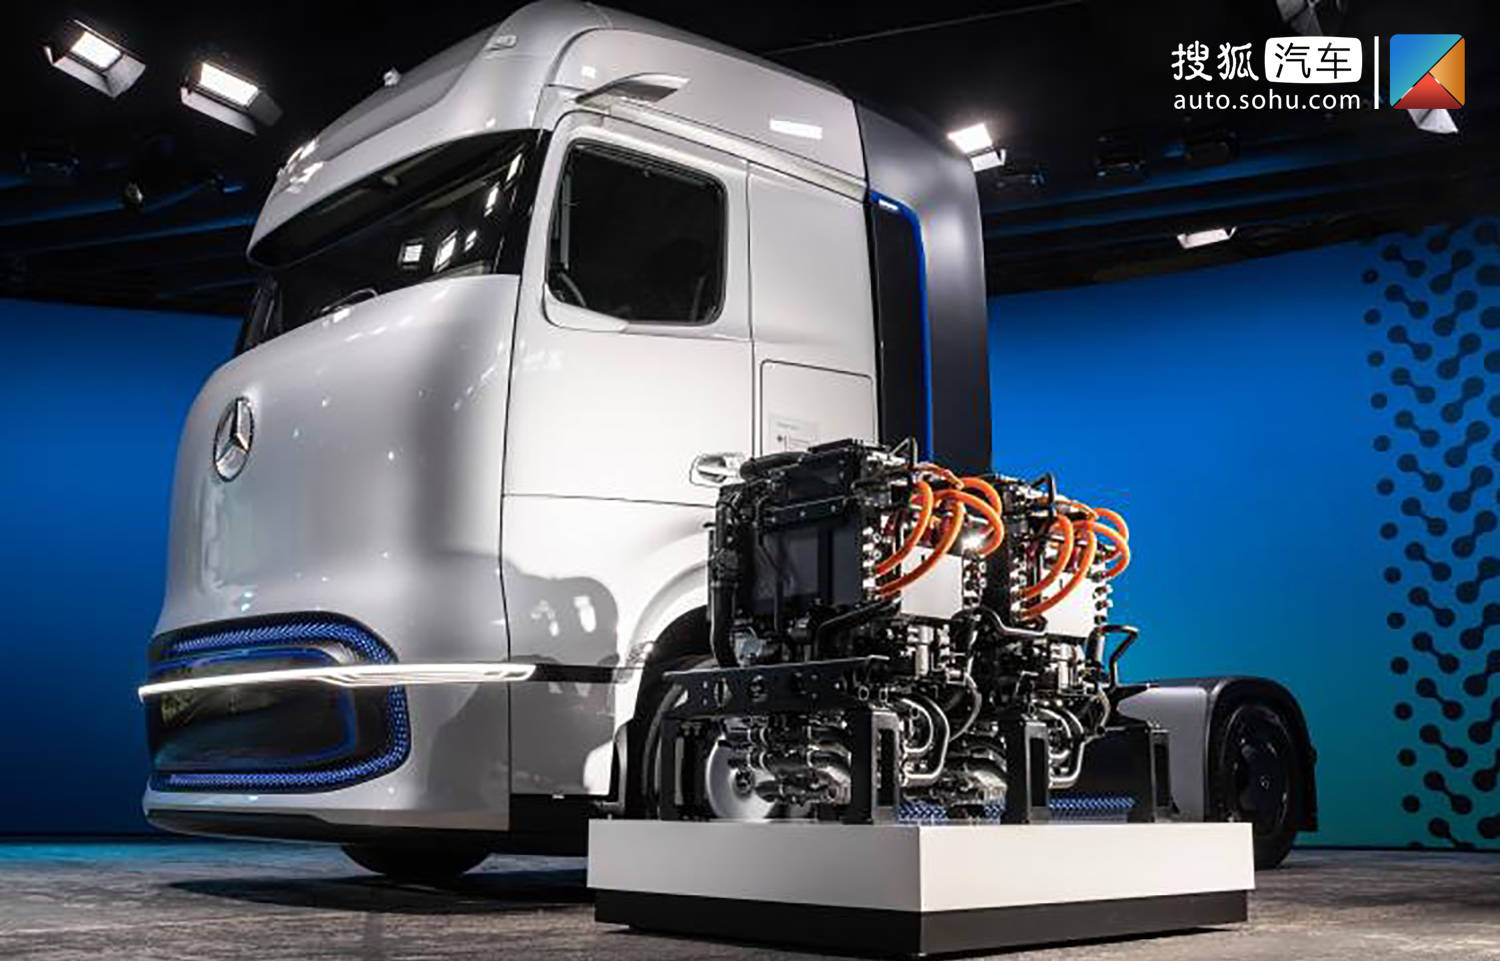 2000km续航里程 奔驰推出 genh2 氢能概念卡车